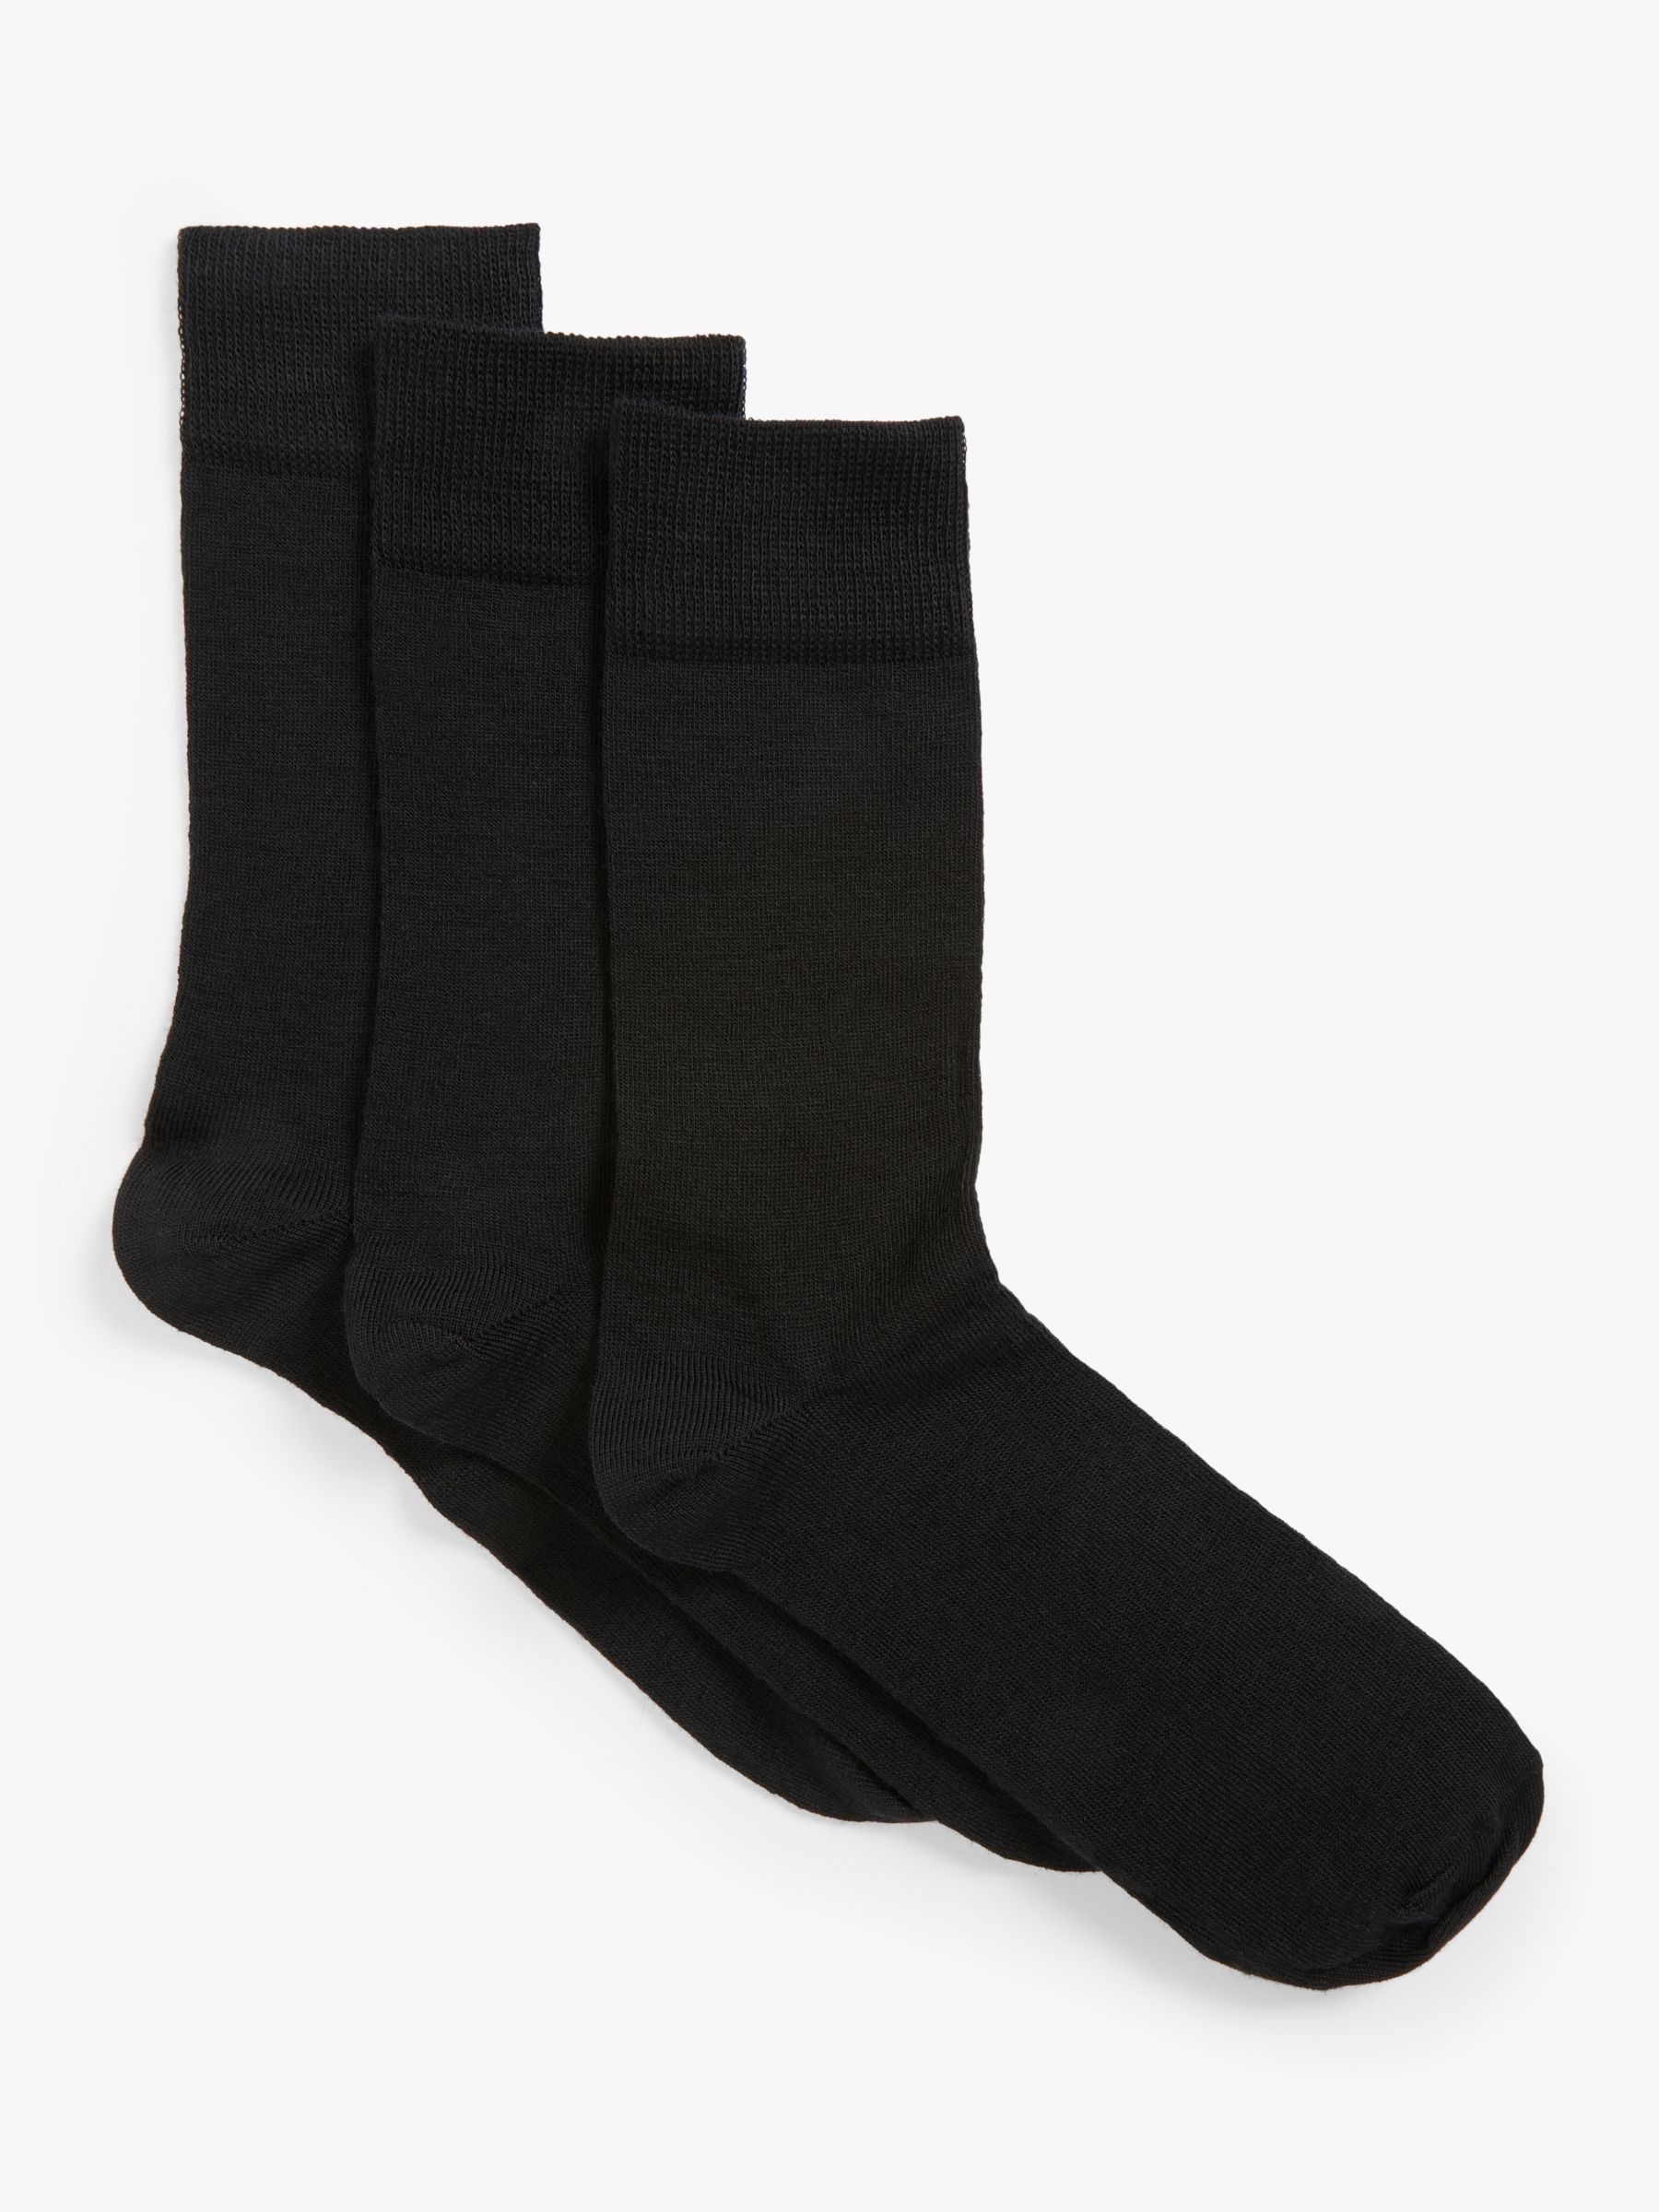 John Lewis Wool Mix Men's Socks, Pack of 3, Black at John Lewis & Partners